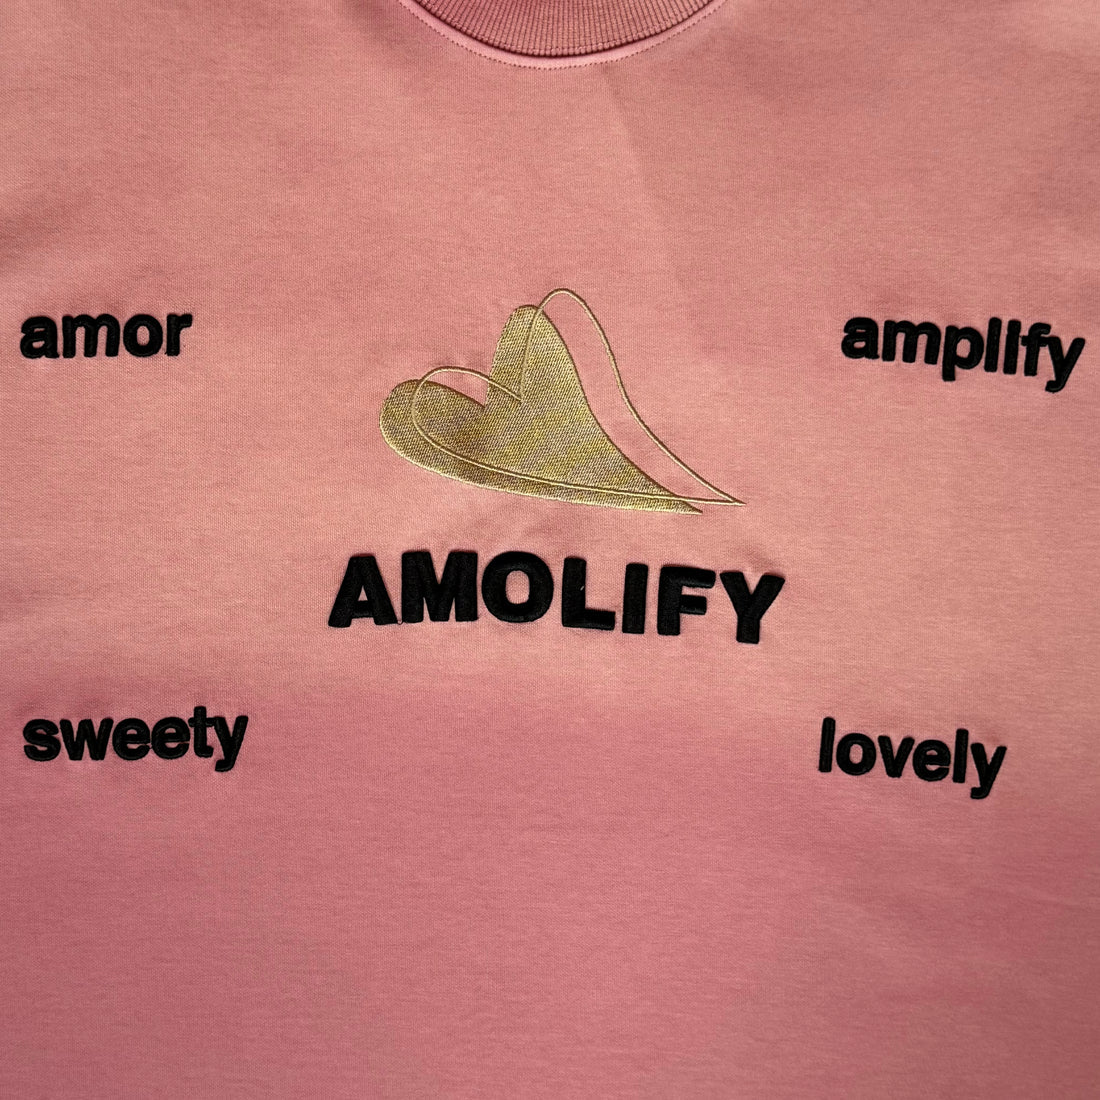 Keynote | Asmolify Stone Washed Tee Pink